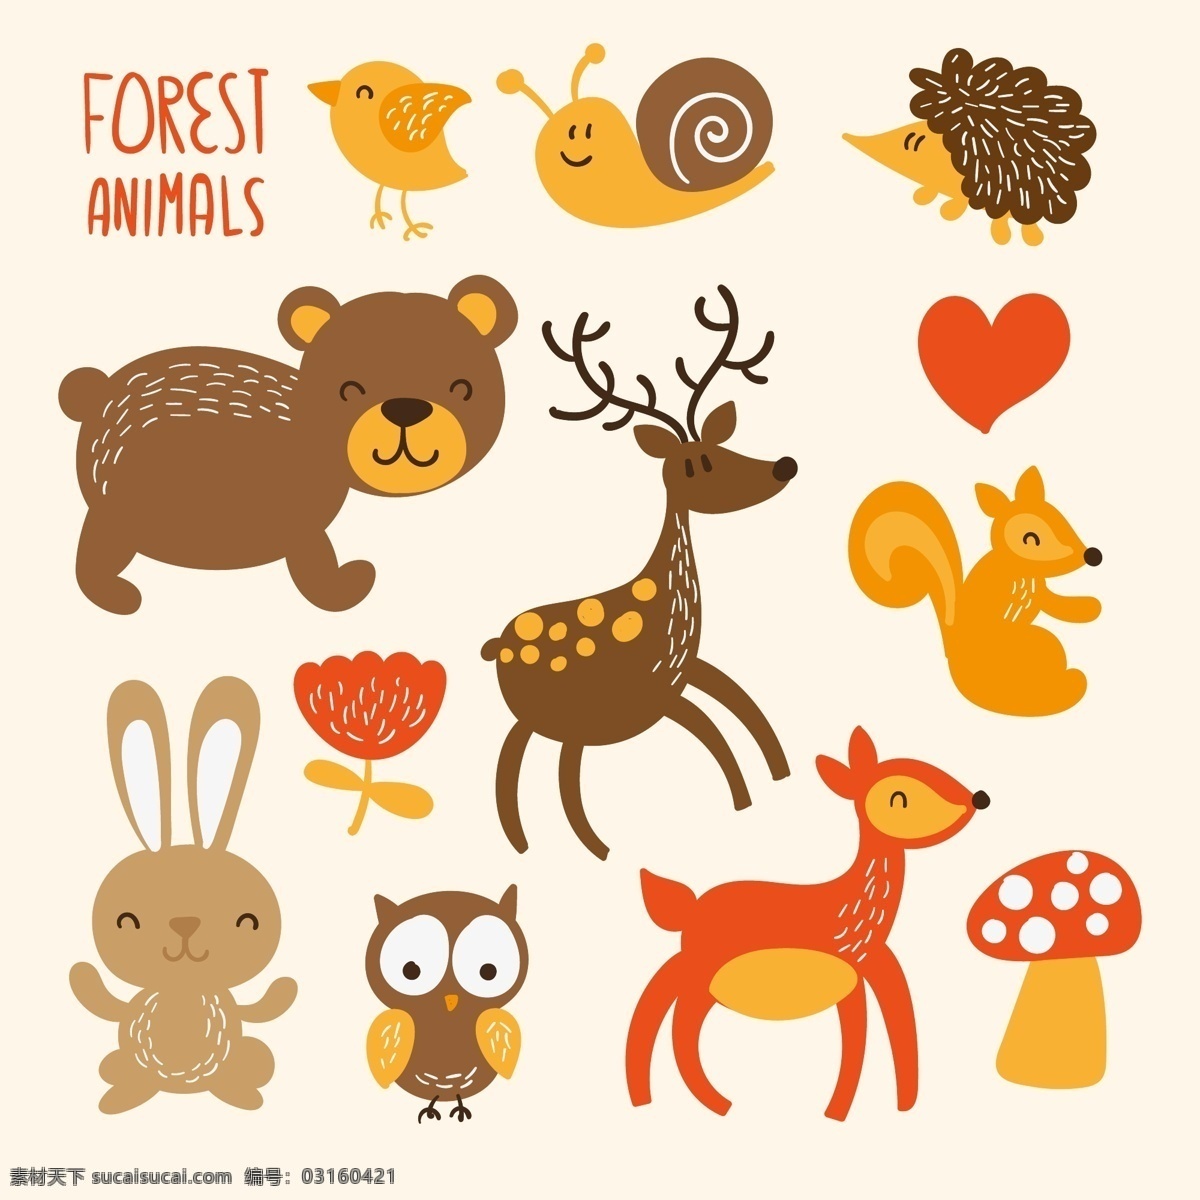 可爱 森林 动物 鸟 插图 猫头鹰 熊 兔 鹿 豪猪 蜗牛 卡通动物 幼儿插画 插画 刺猬 手绘 卡通 生物世界 野生动物